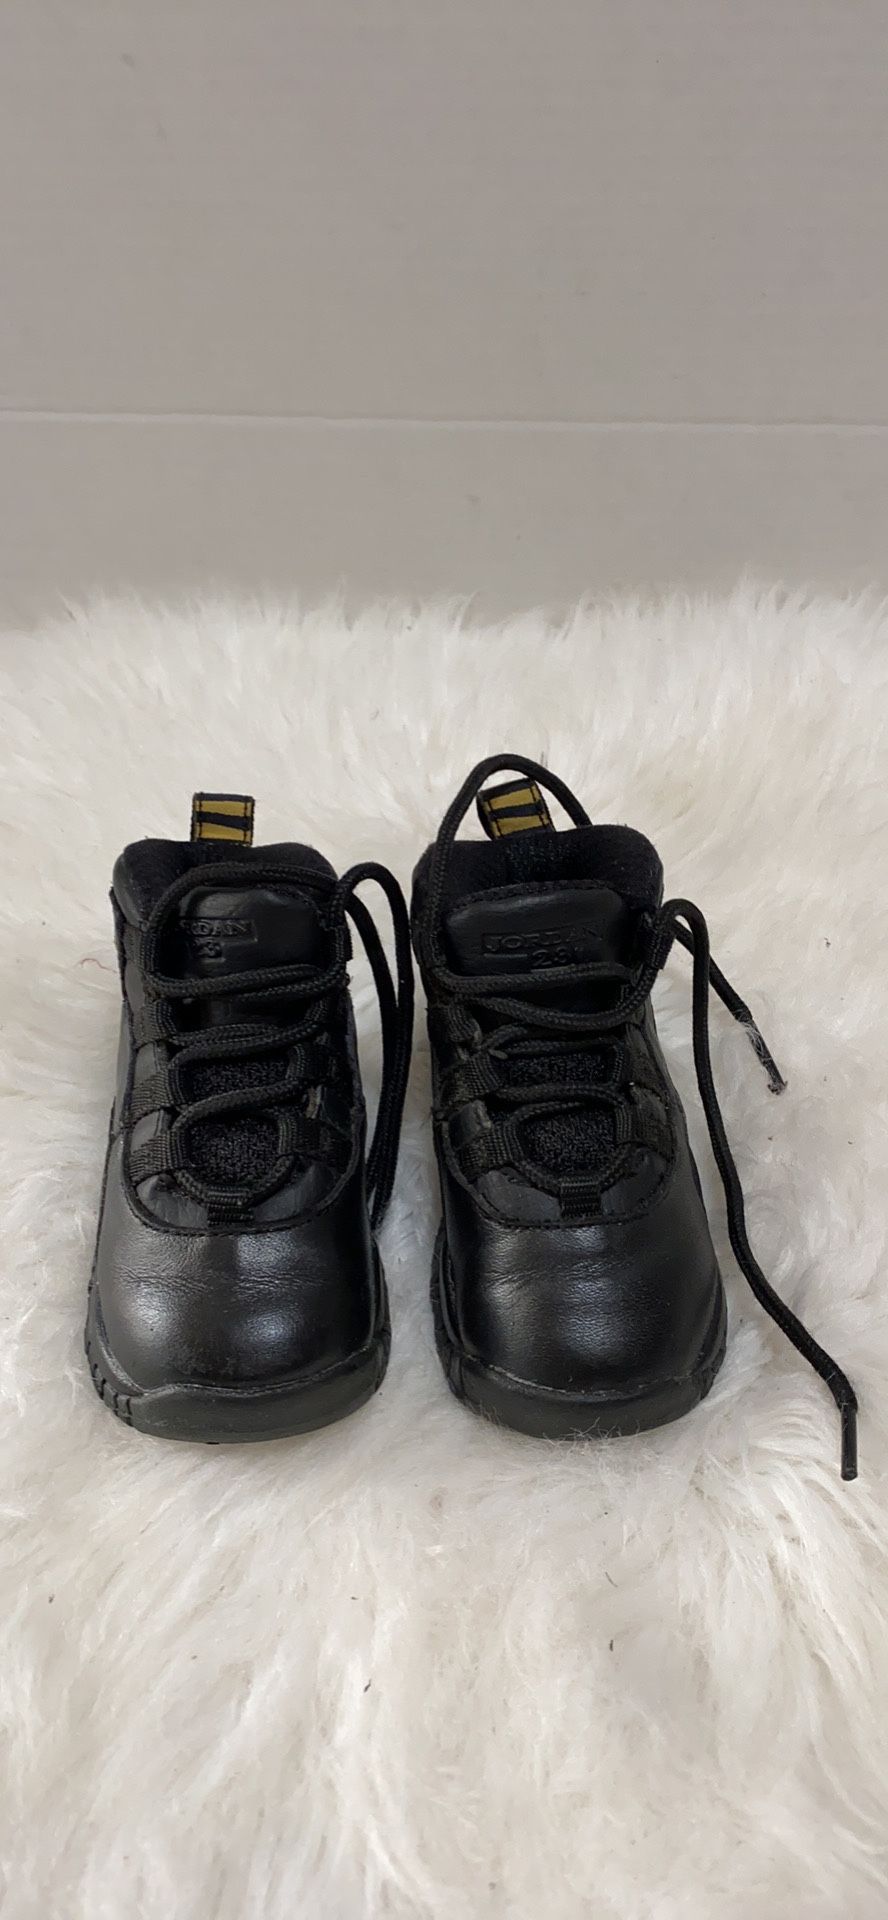 Nike Air Jordan Retro New York NYC Black/Gold Toddler Shoe size 5 C